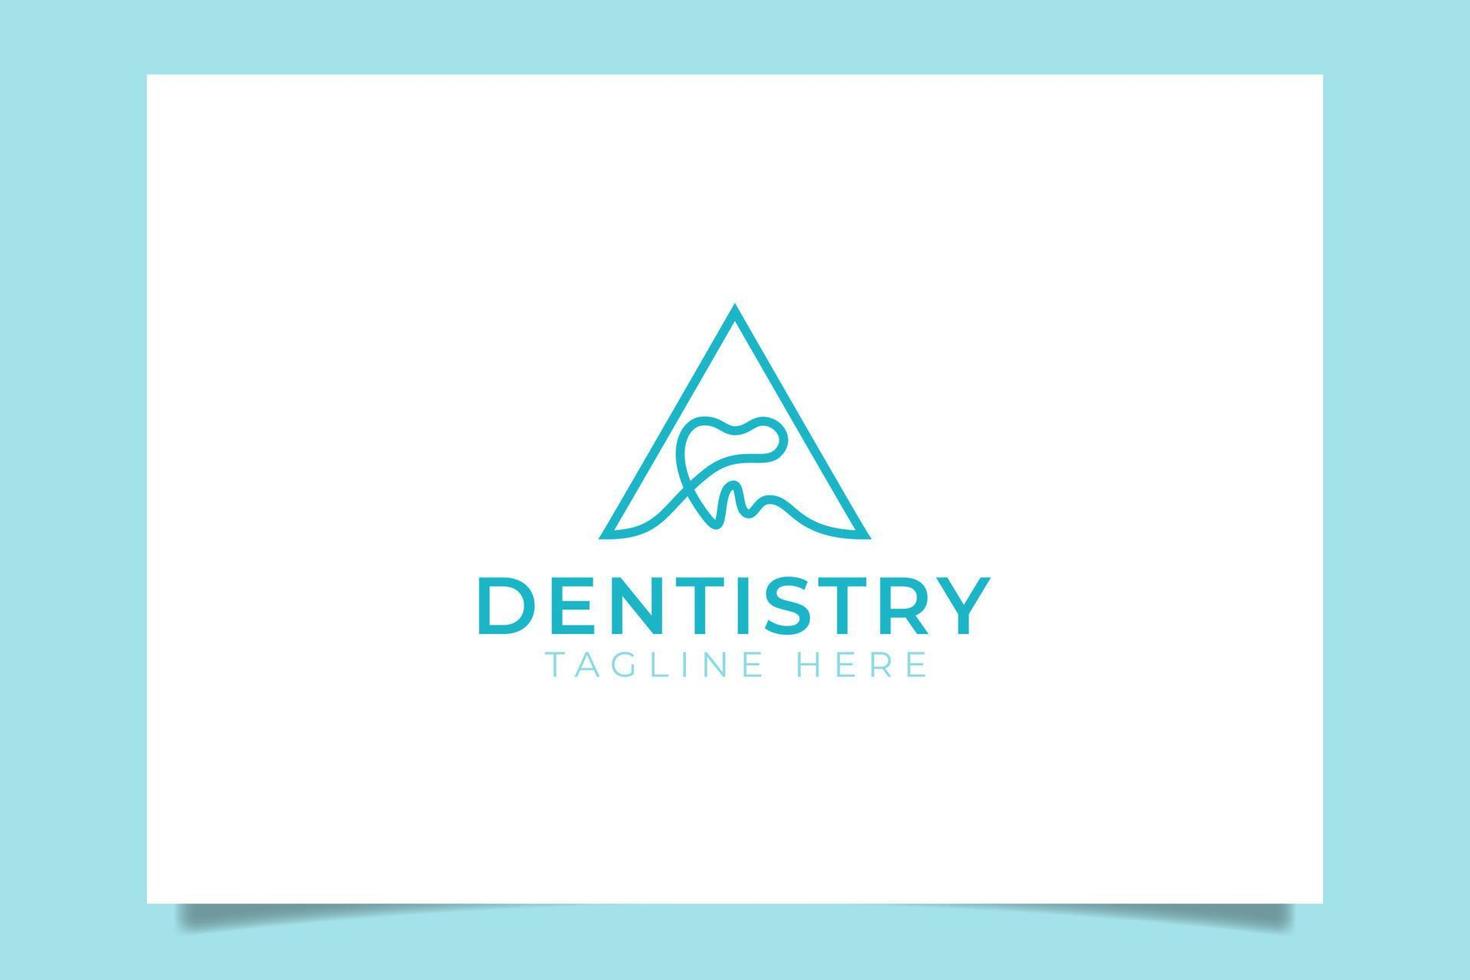 carta um logotipo de odontologia para qualquer negócio, especialmente para odontologia, odontologia, clínica, escritório, cirúrgico, atendimento odontológico, etc. vetor